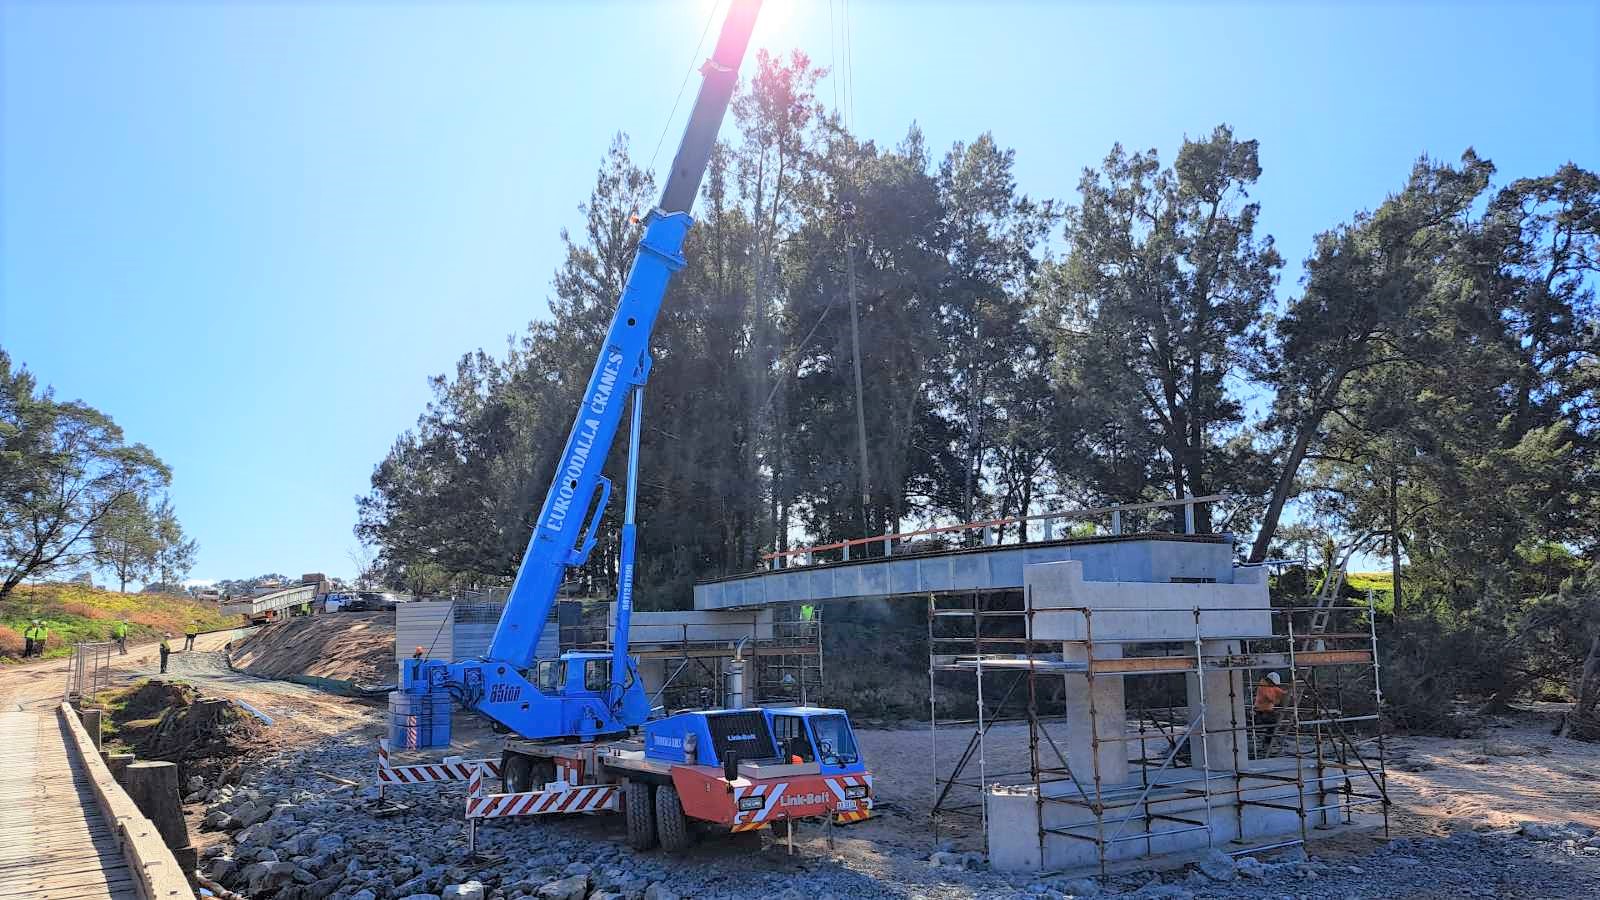 A mobile crane lowers a bridge deck section into place on a construction site.